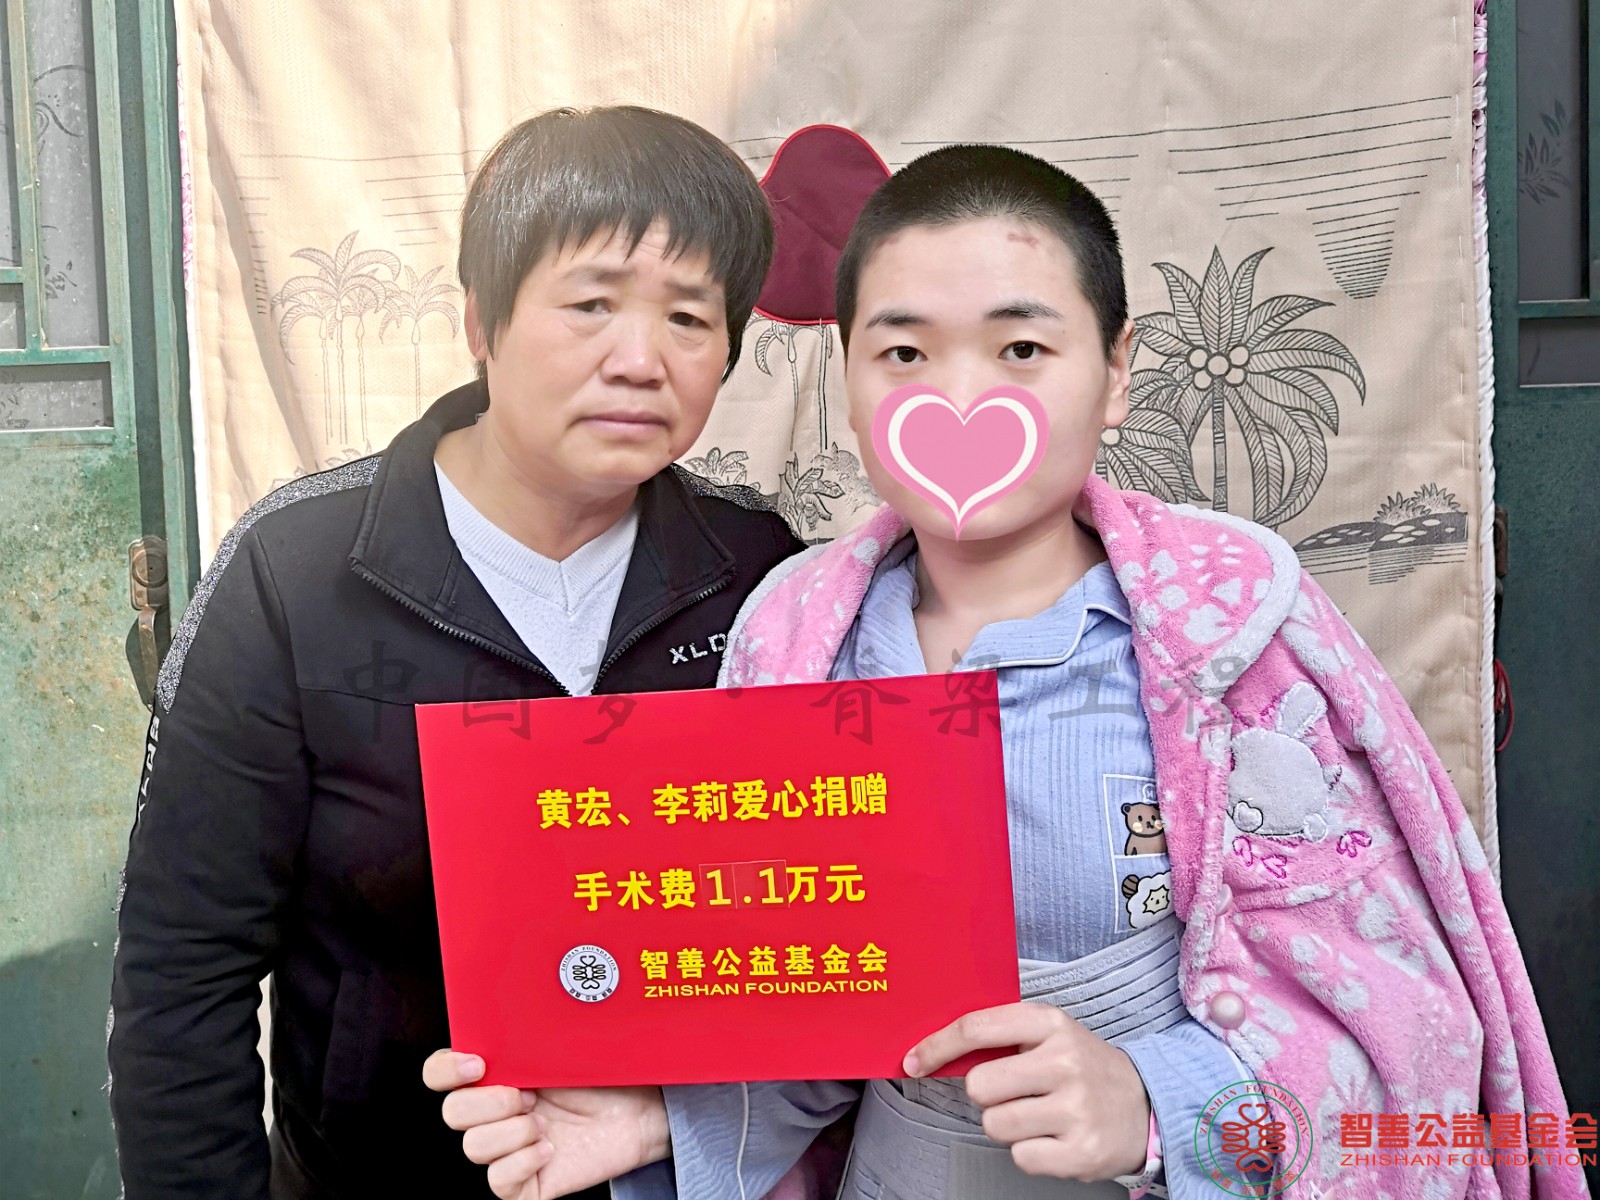 54 在西京医院手术的陕西西安长安区患者小何获黄宏李莉爱心救助金1.1万元.jpg